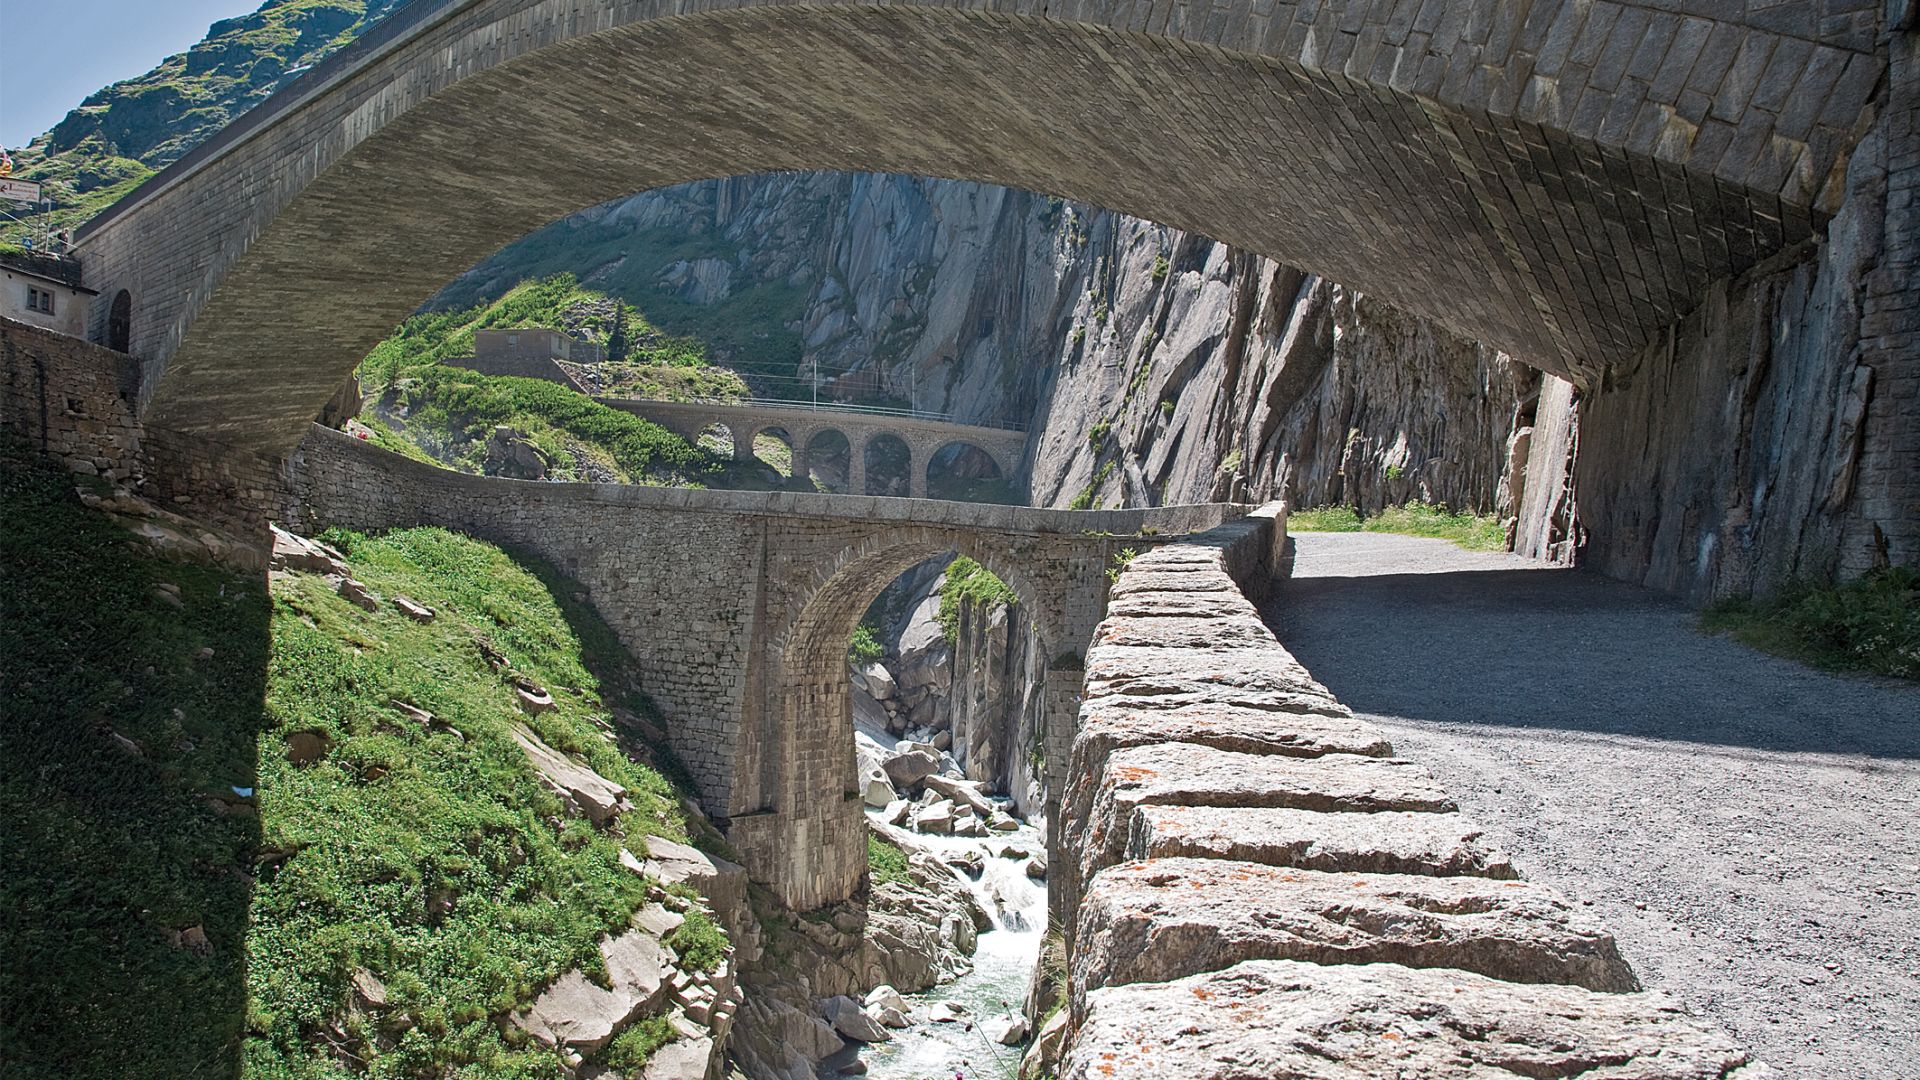 Andermatt1 Топ 10 лучших экскурсий по Швейцарии - путеводитель по Швейцарии - путеводитель по Швейцарии от ZurichGuide.ru. Что обязательно посмотреть в Швейцарии, самые зрелищные маршруты